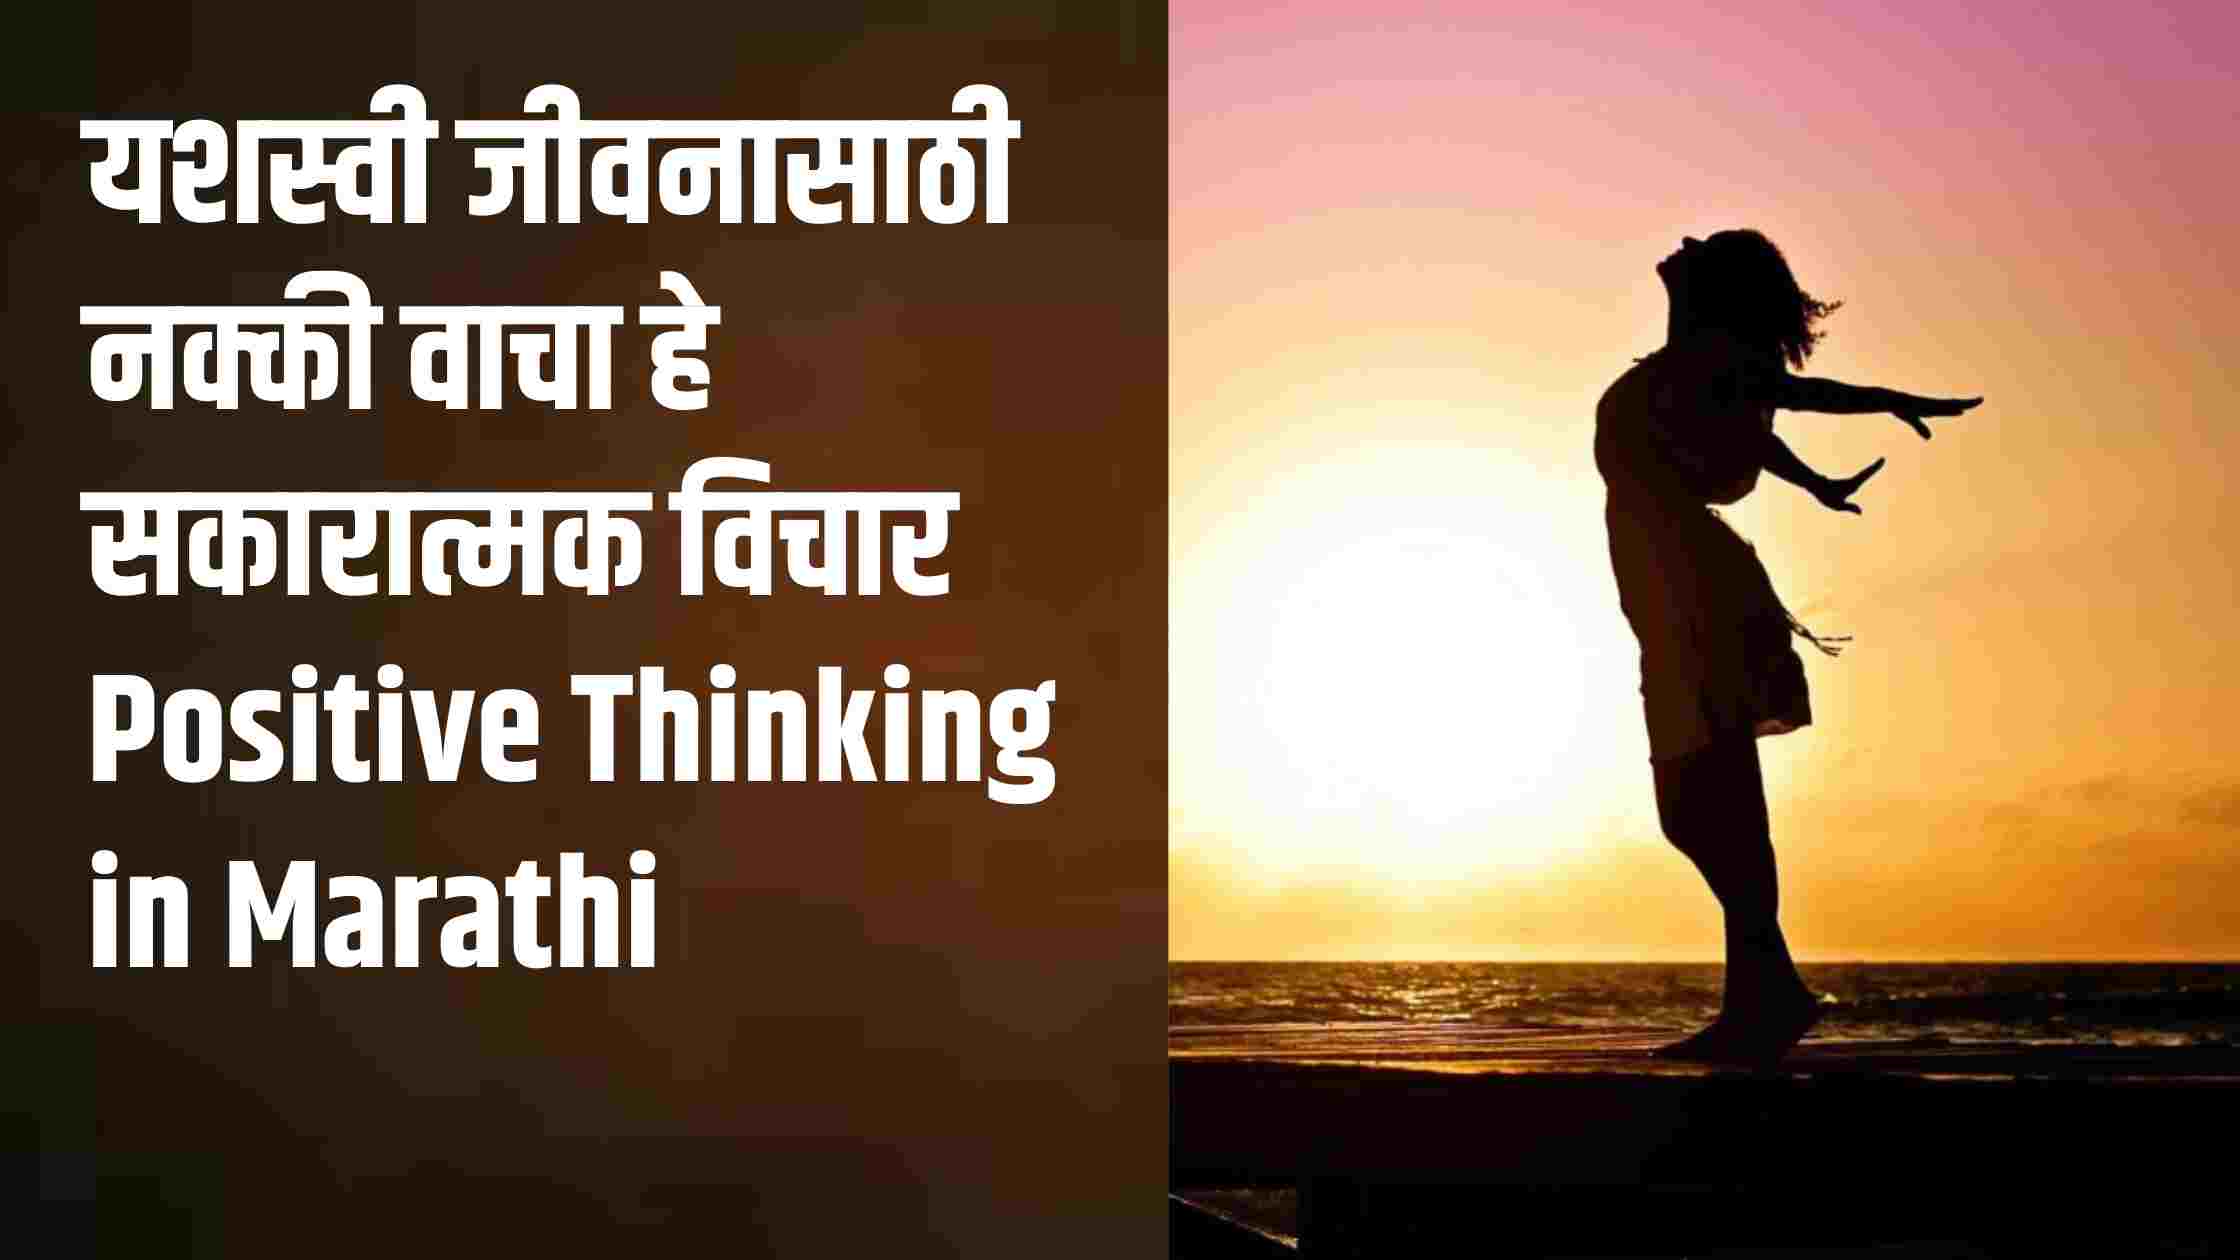 यशस्वी जीवनासाठी नक्की वाचा हे सकारात्मक विचार Positive Thinking in Marathi